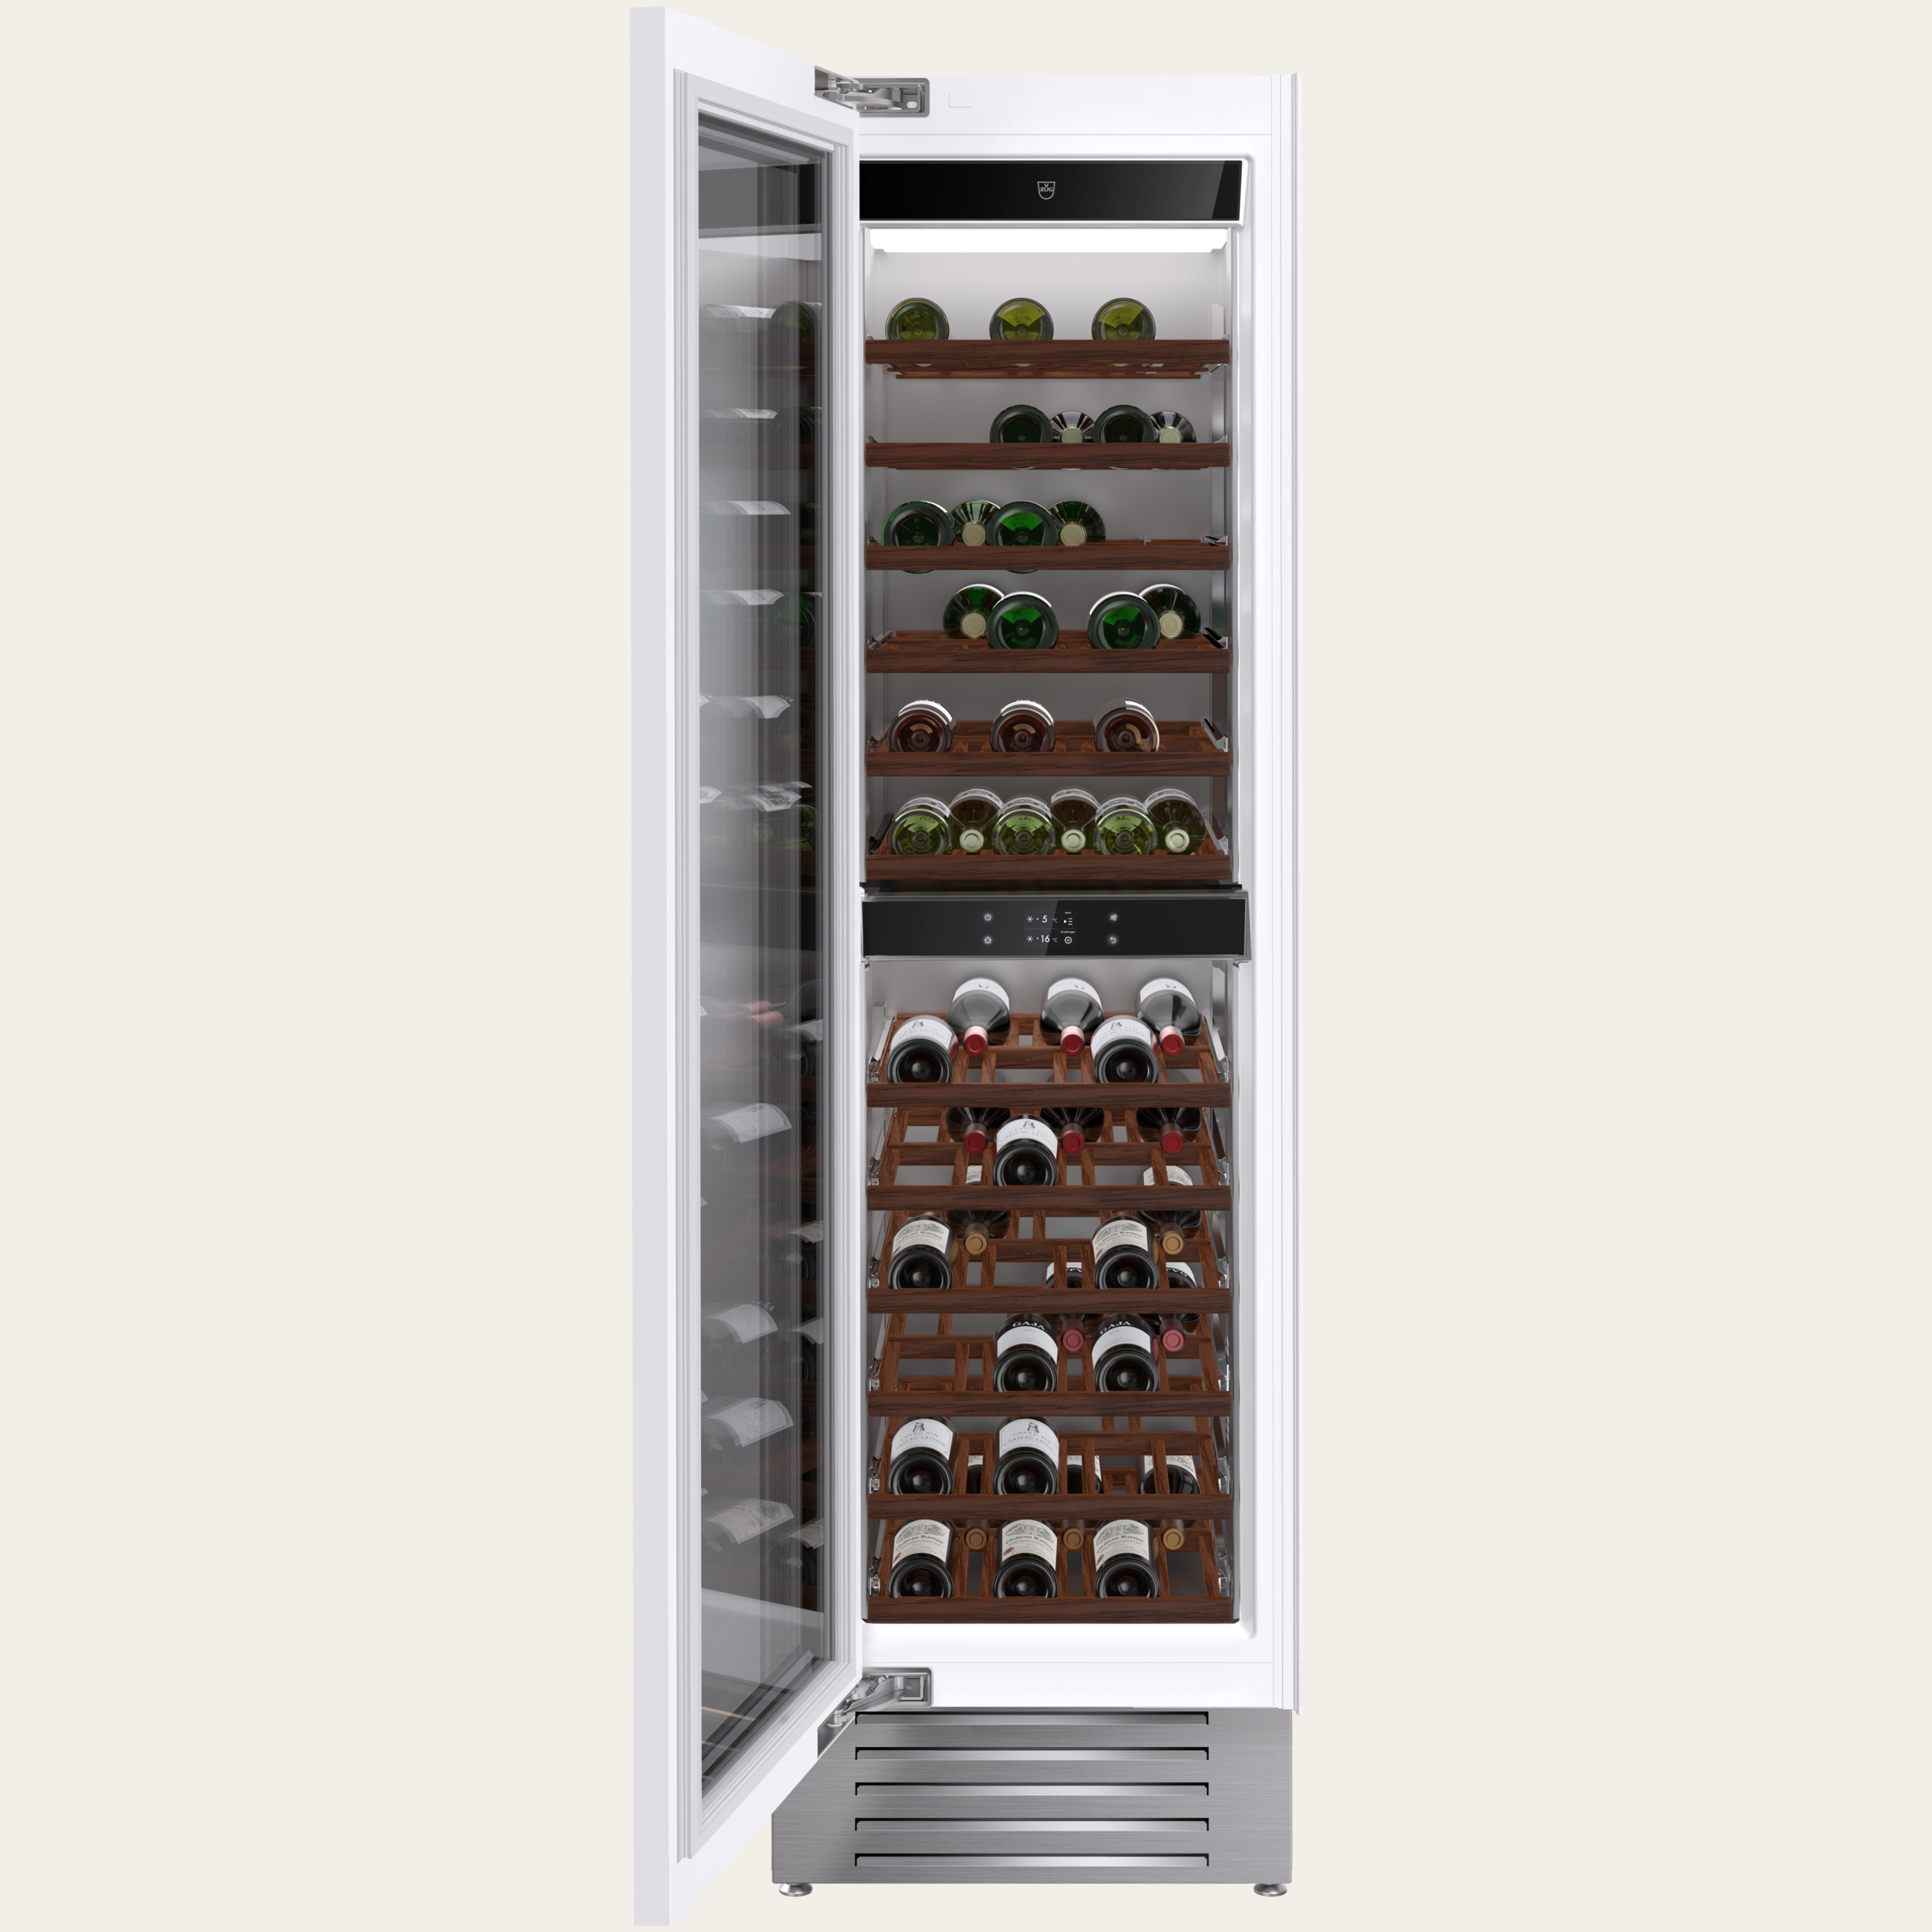 V-ZUG Refrigerator/freezer WineCooler V6000 Supreme,Standard width: 60 cm, Standard height: 205 cm, Fully integratable, Door hinge: Left, Energy efficiency rating: A, TouchControl